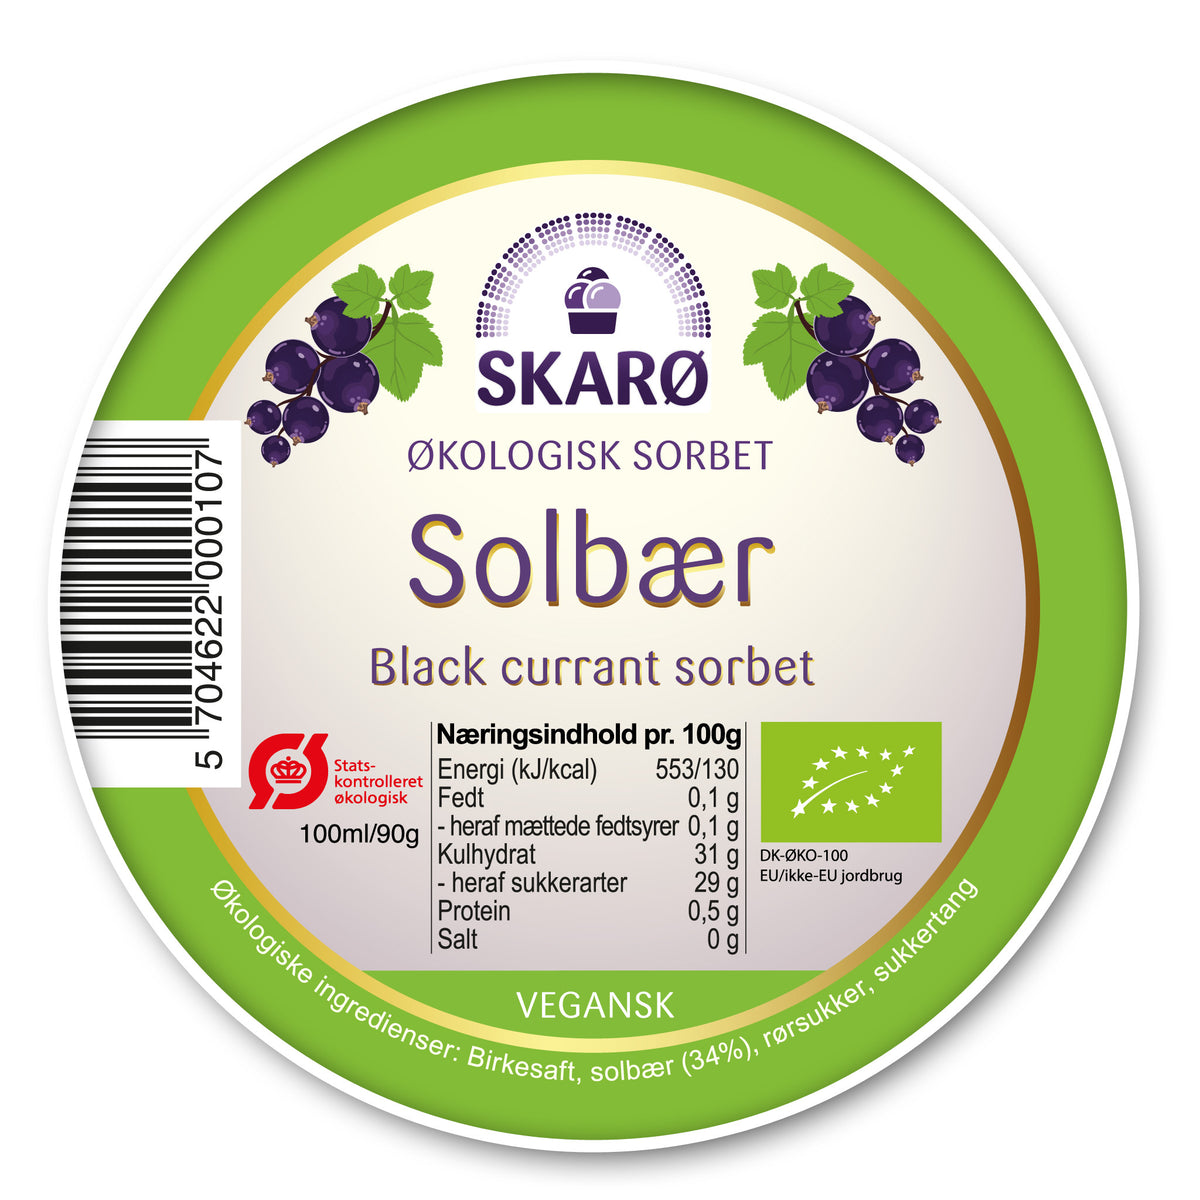 Økologisk vegansk Sorbet med Solbær fra Skarø